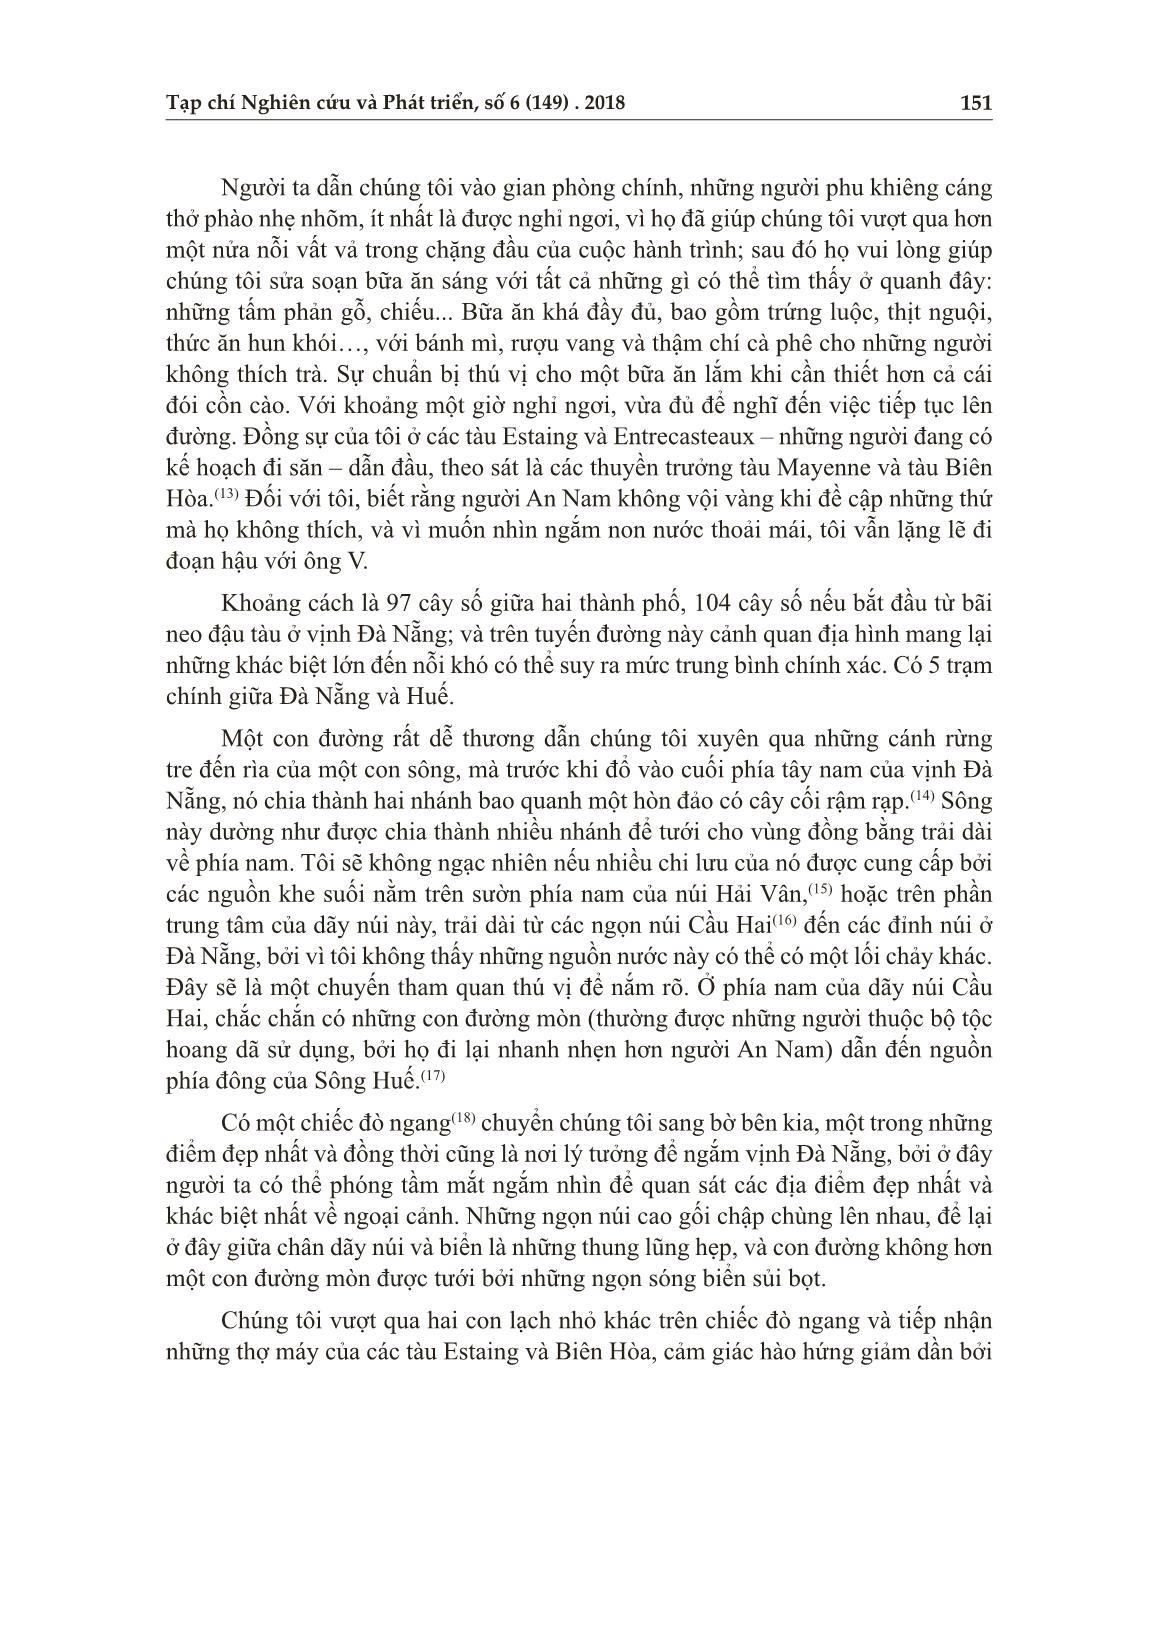 Từ đèo Hải Vân đến sông An Cựu - Huế năm 1876 trang 4